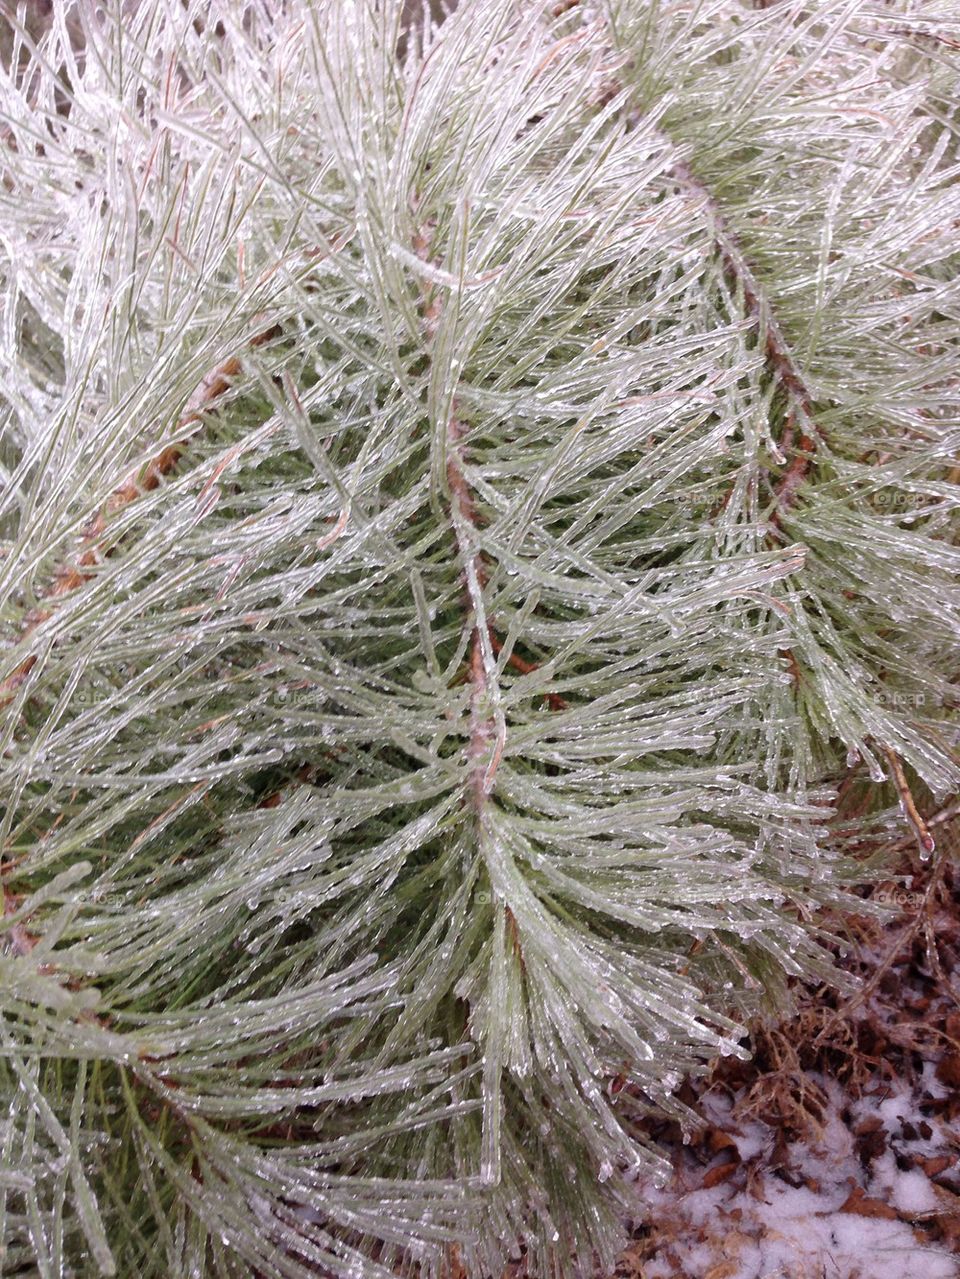 Icy pine needles